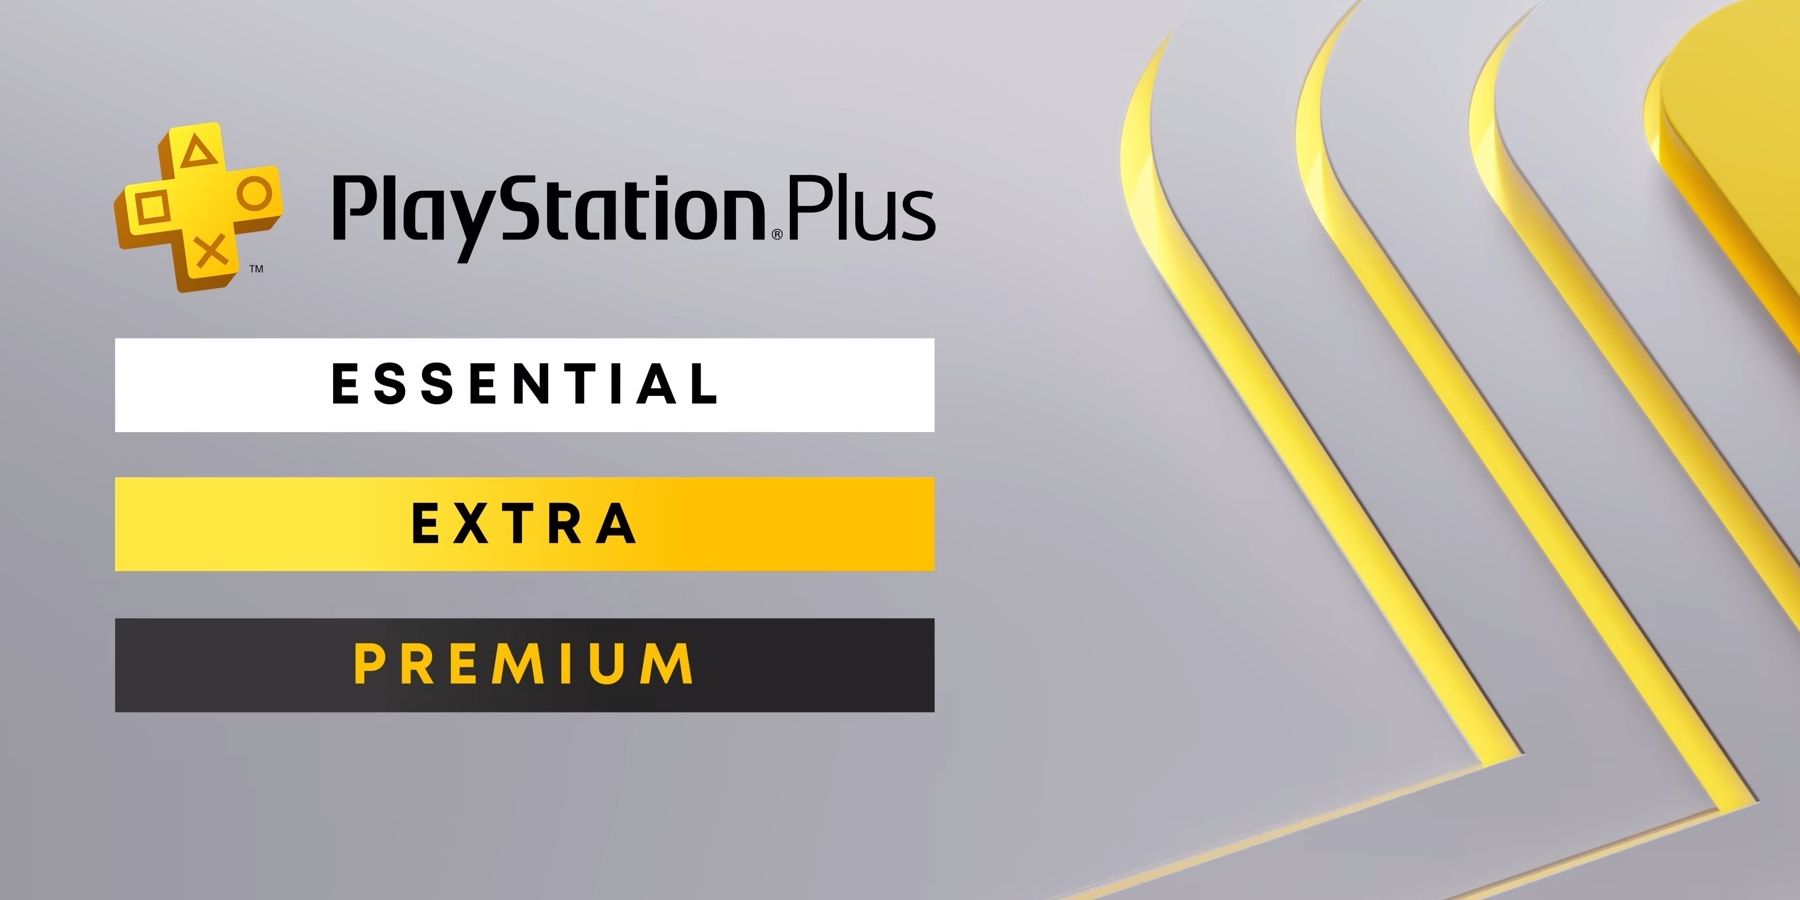 PlayStation Plus Premium, Classics